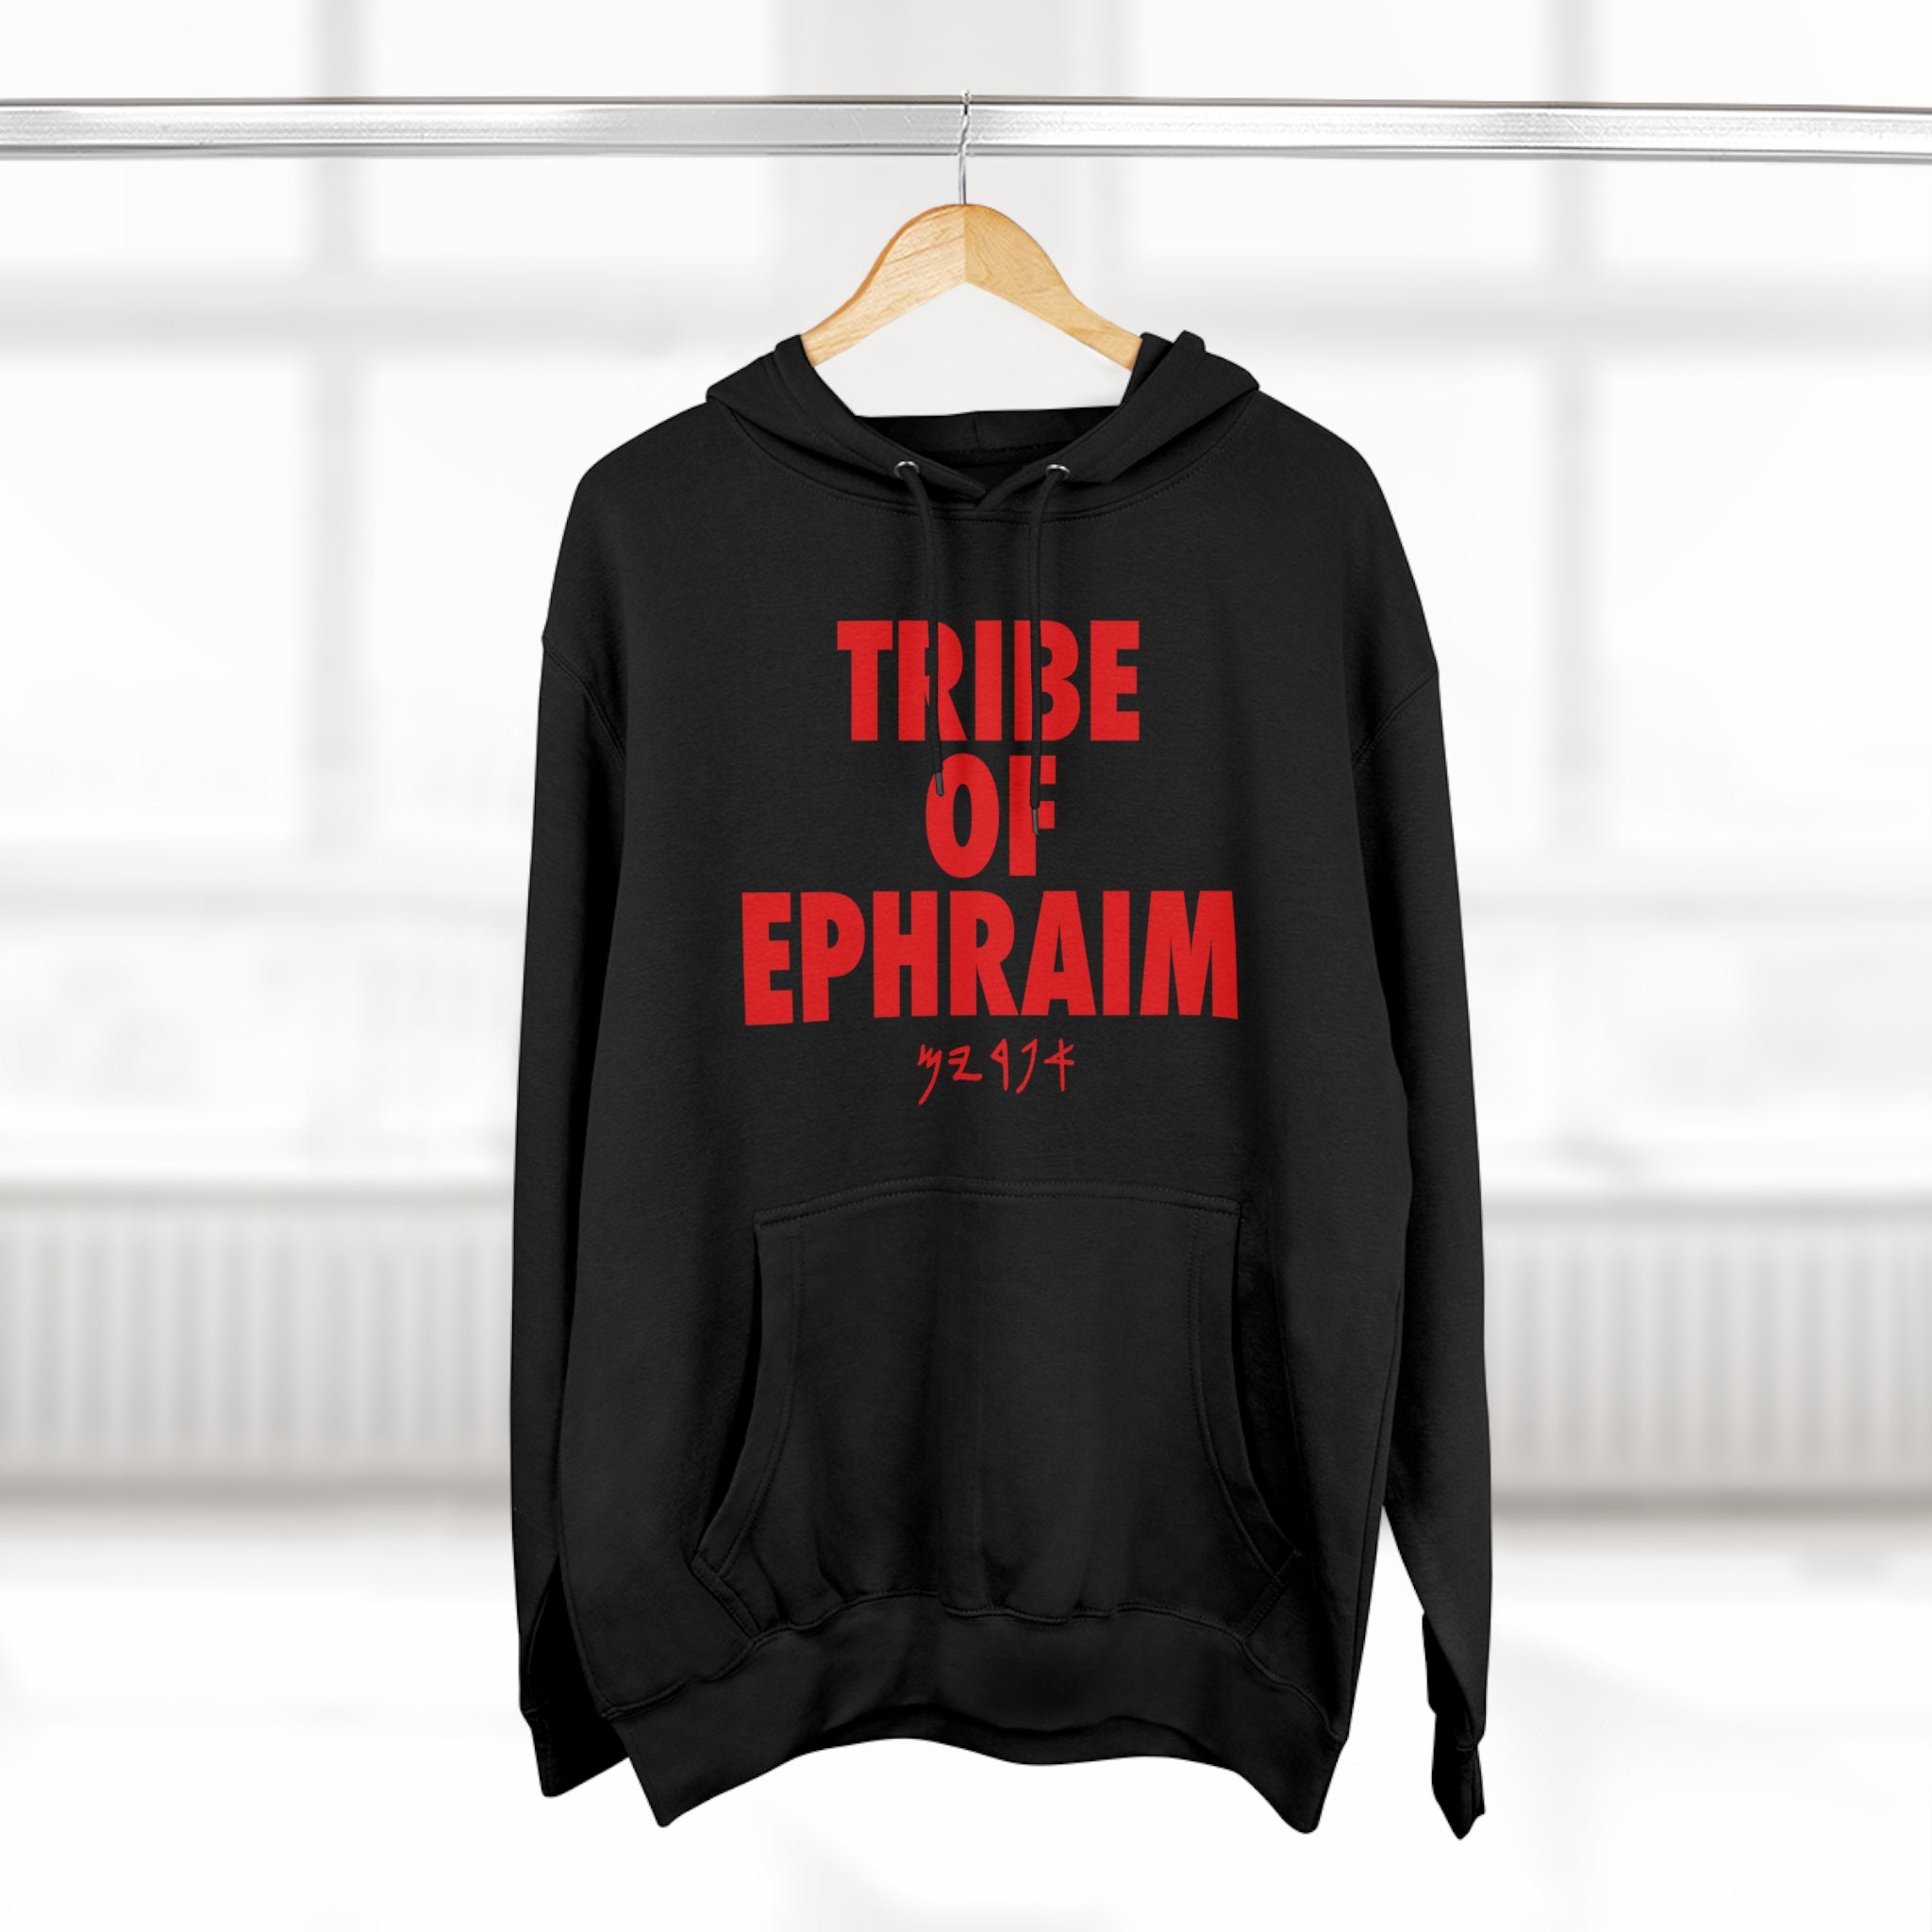 TRIBE OF EPHRAIM HOODIE (RED)